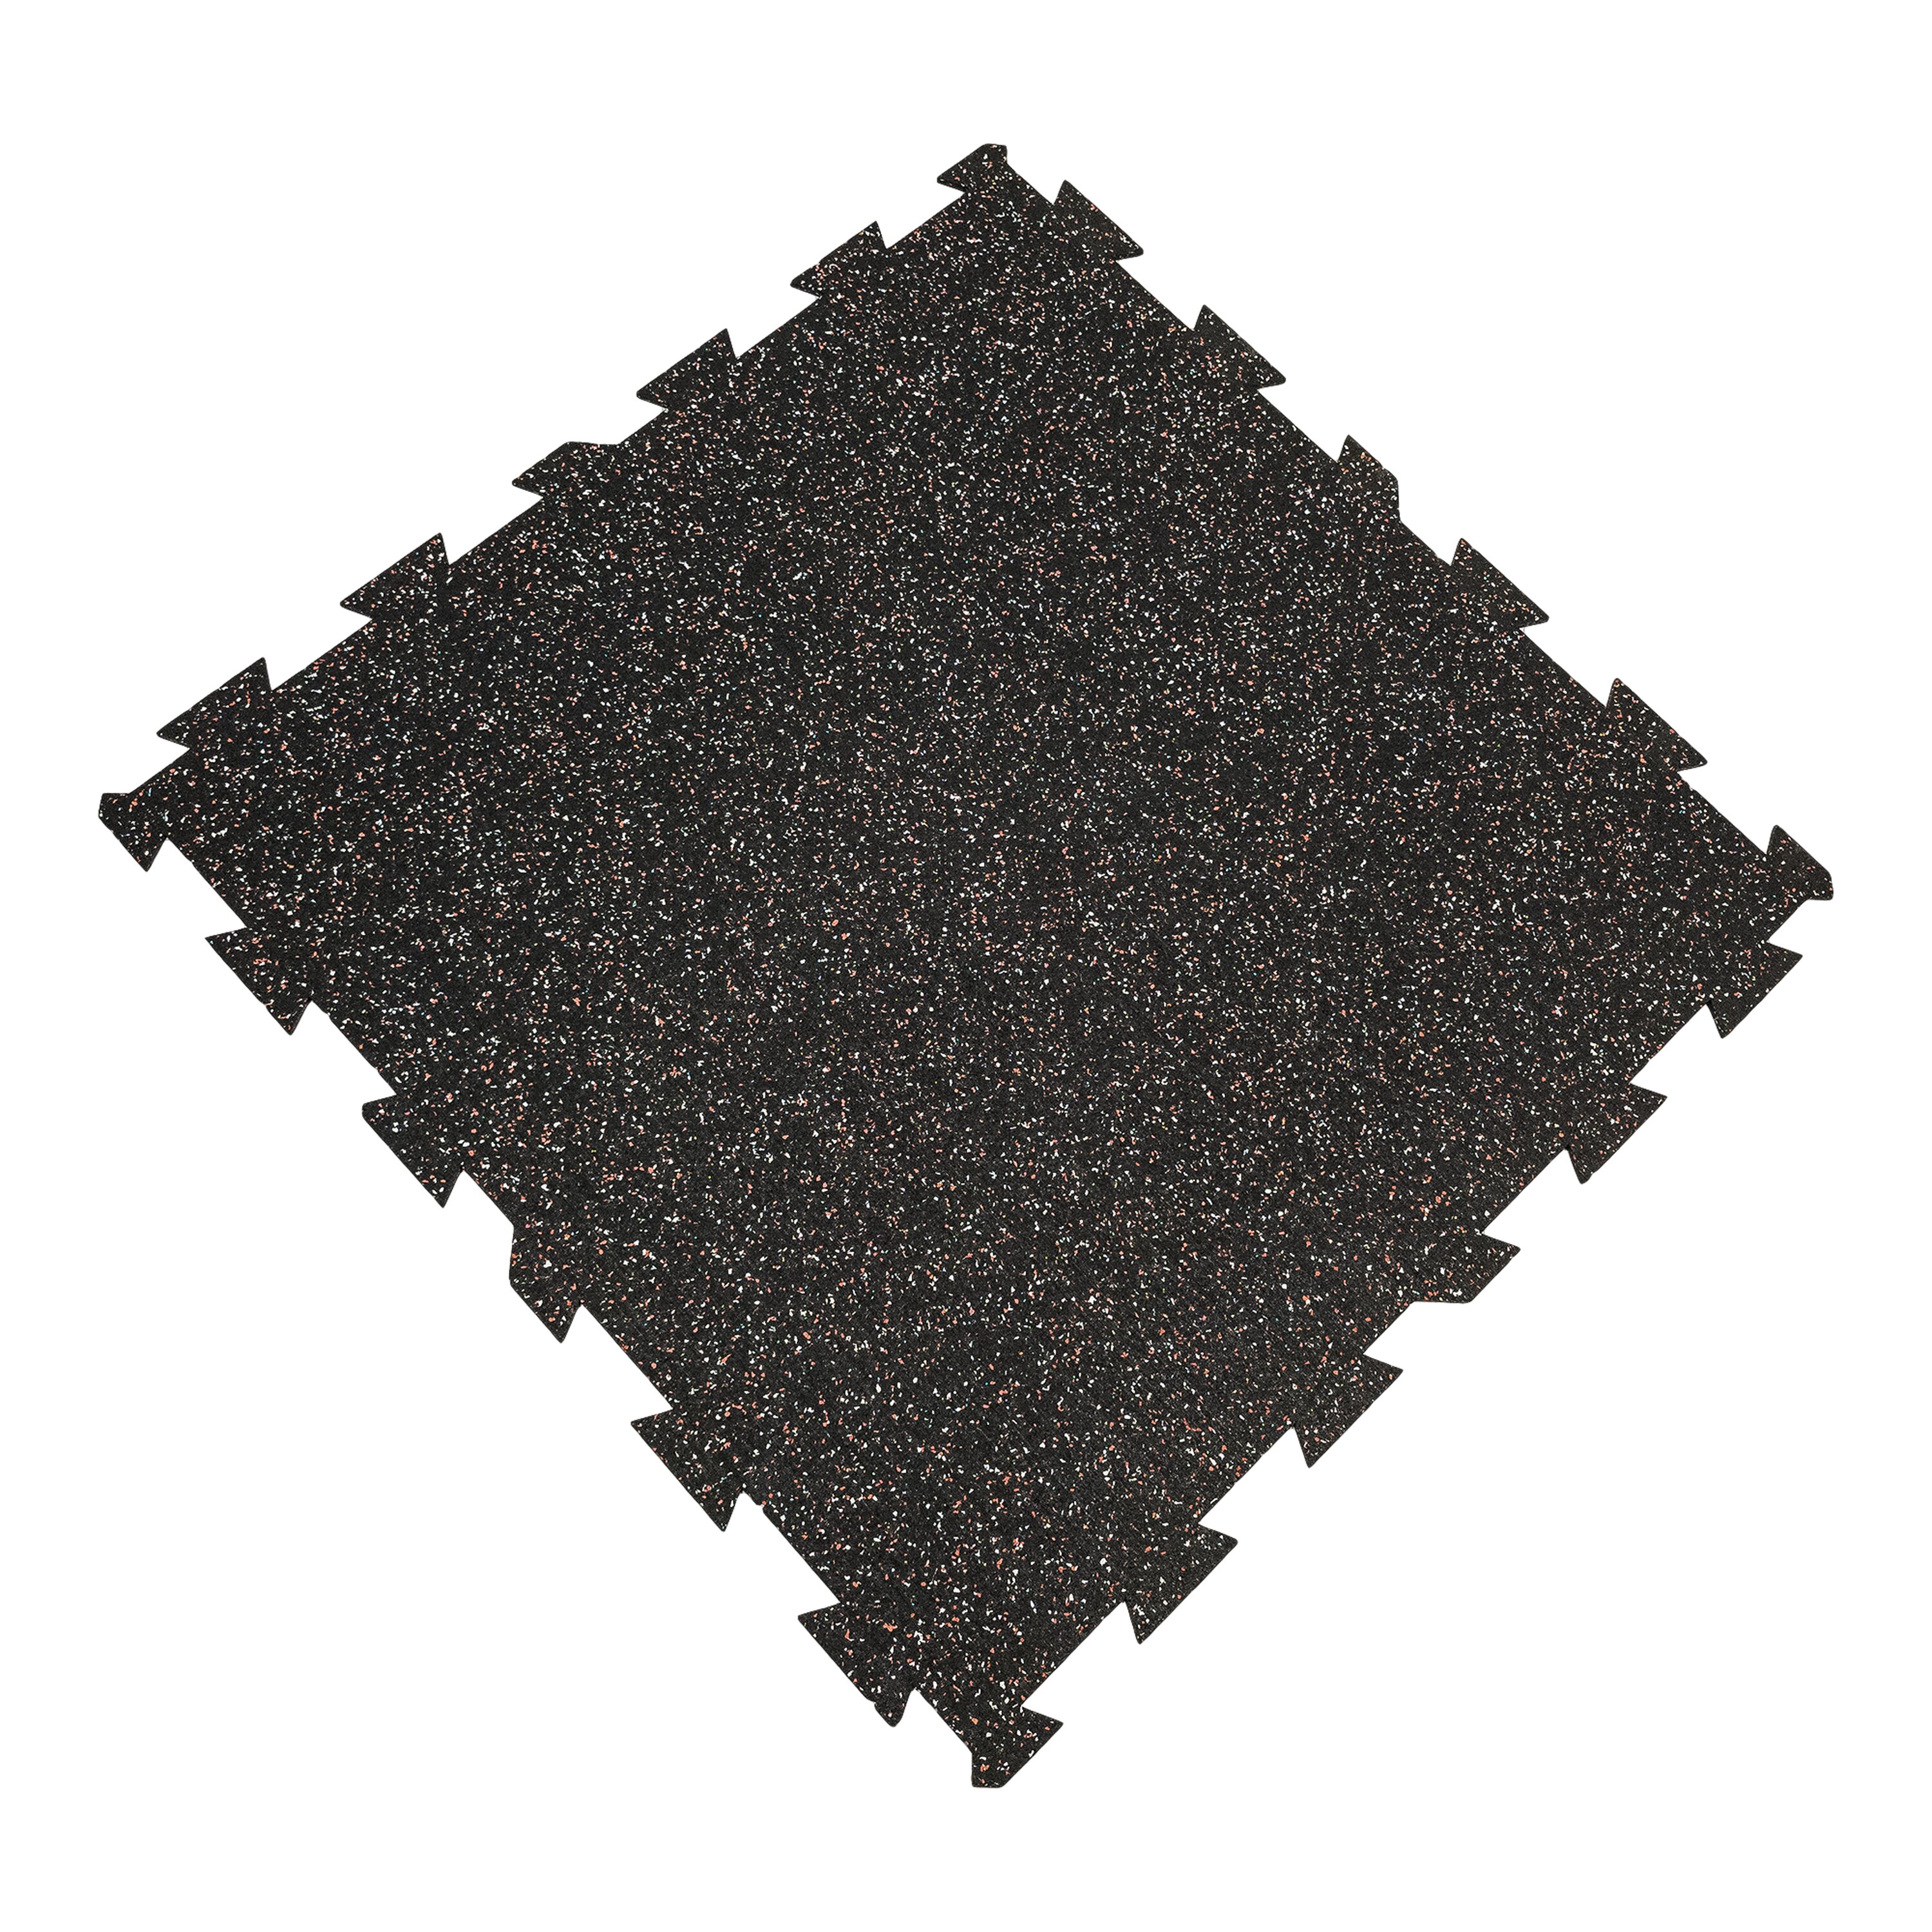 Čierno-bielo-červená podlahová guma (puzzle - stred) FLOMA FitFlo SF1050 - dĺžka 100 cm, šírka 100 cm, výška 1,6 cm